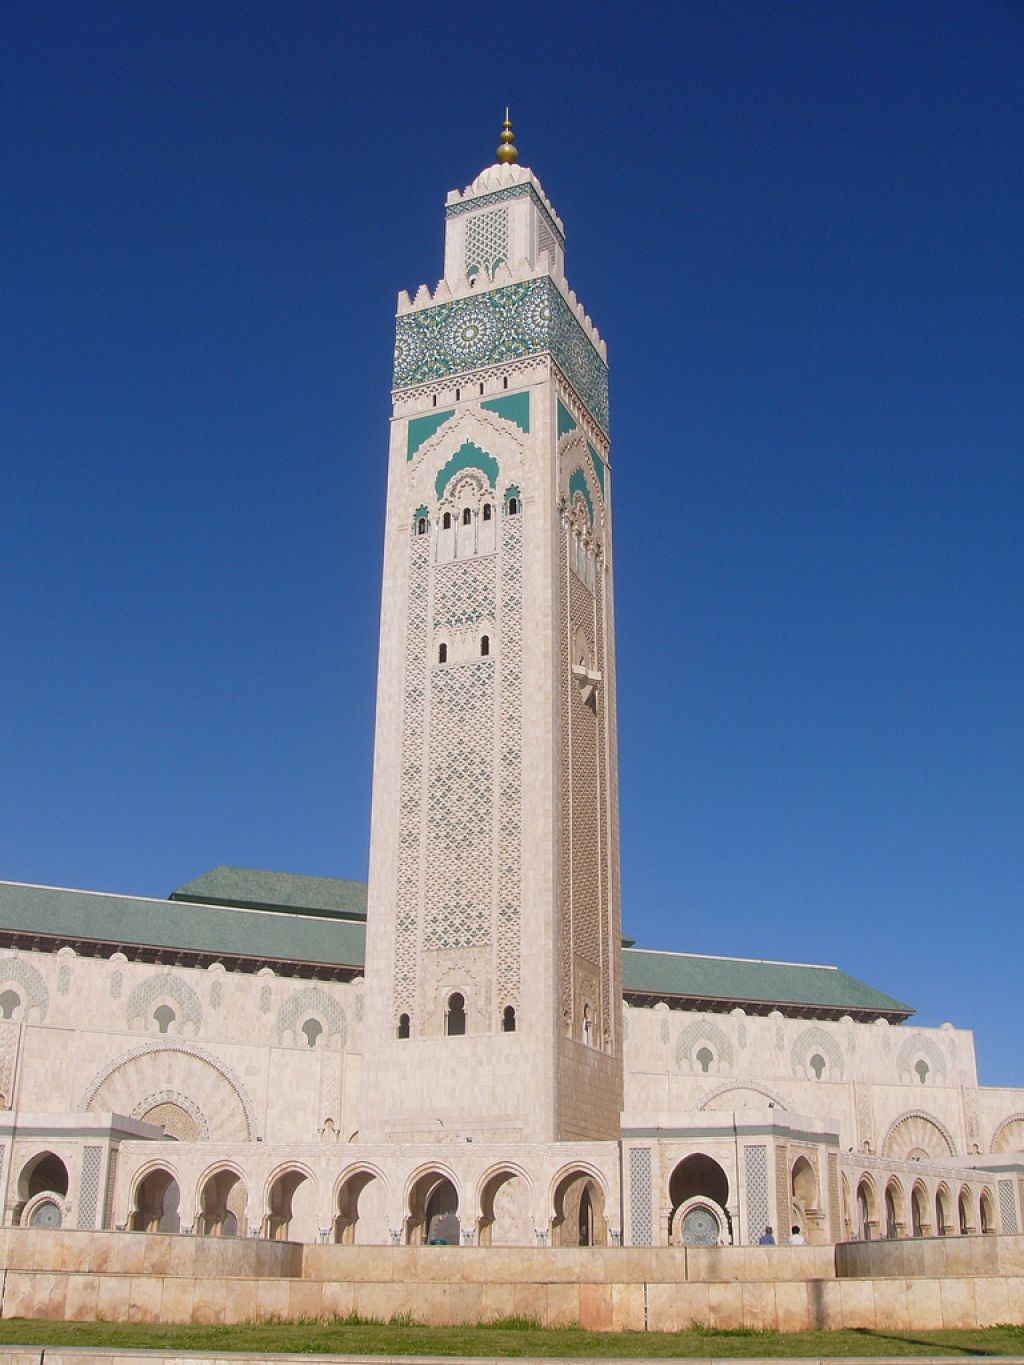 hassan ii mosque4 Hassan II Mosque in Casablanca, Morocco